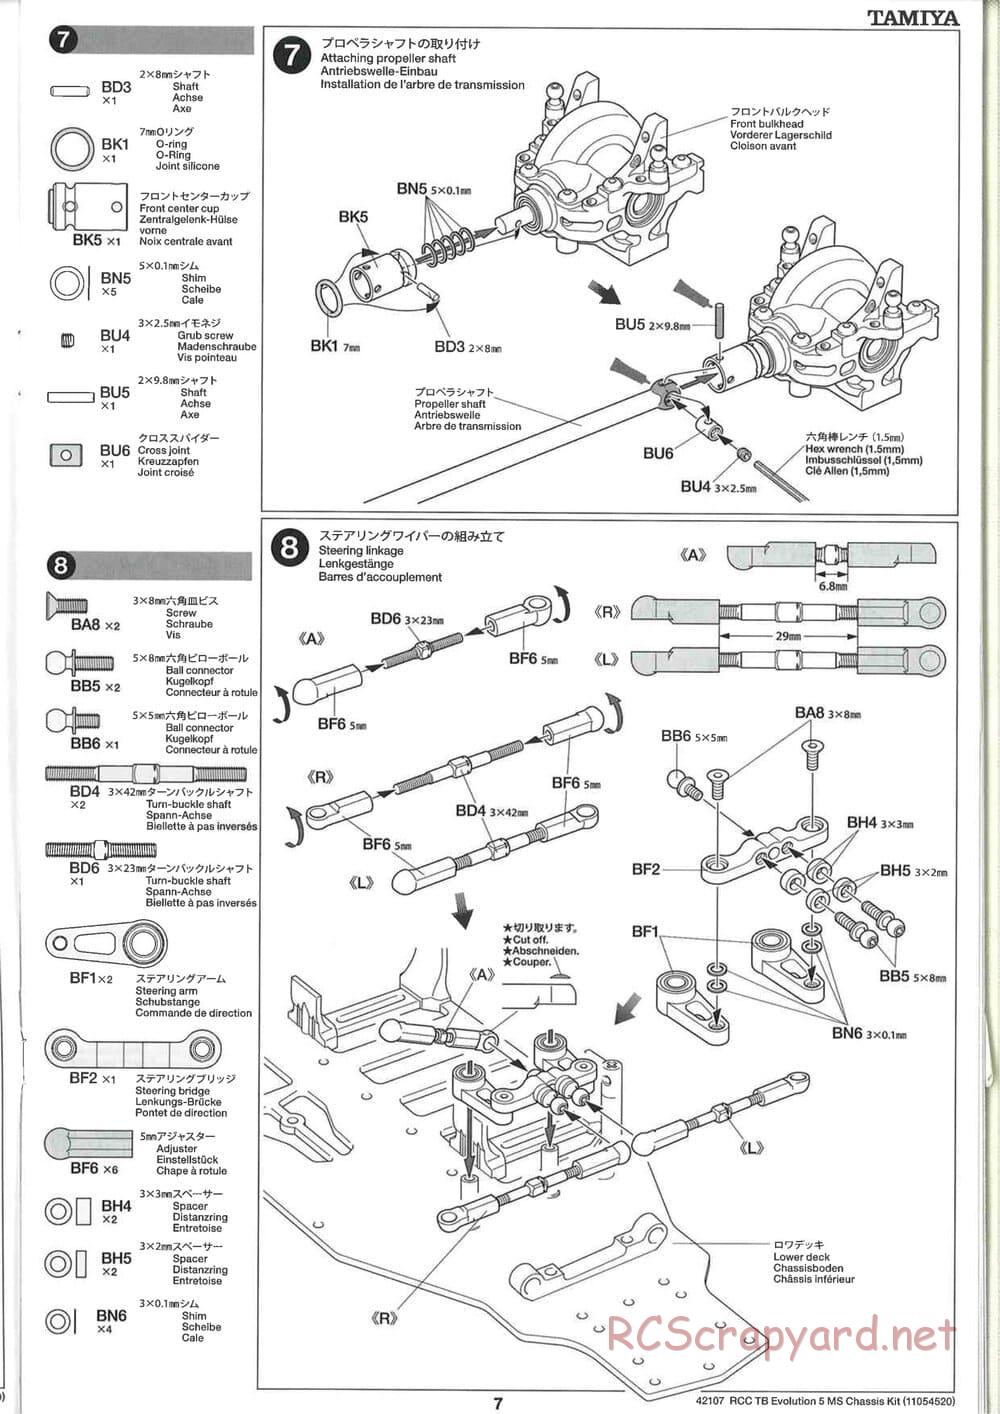 Tamiya - TB Evolution 5 MS Chassis - Manual - Page 7